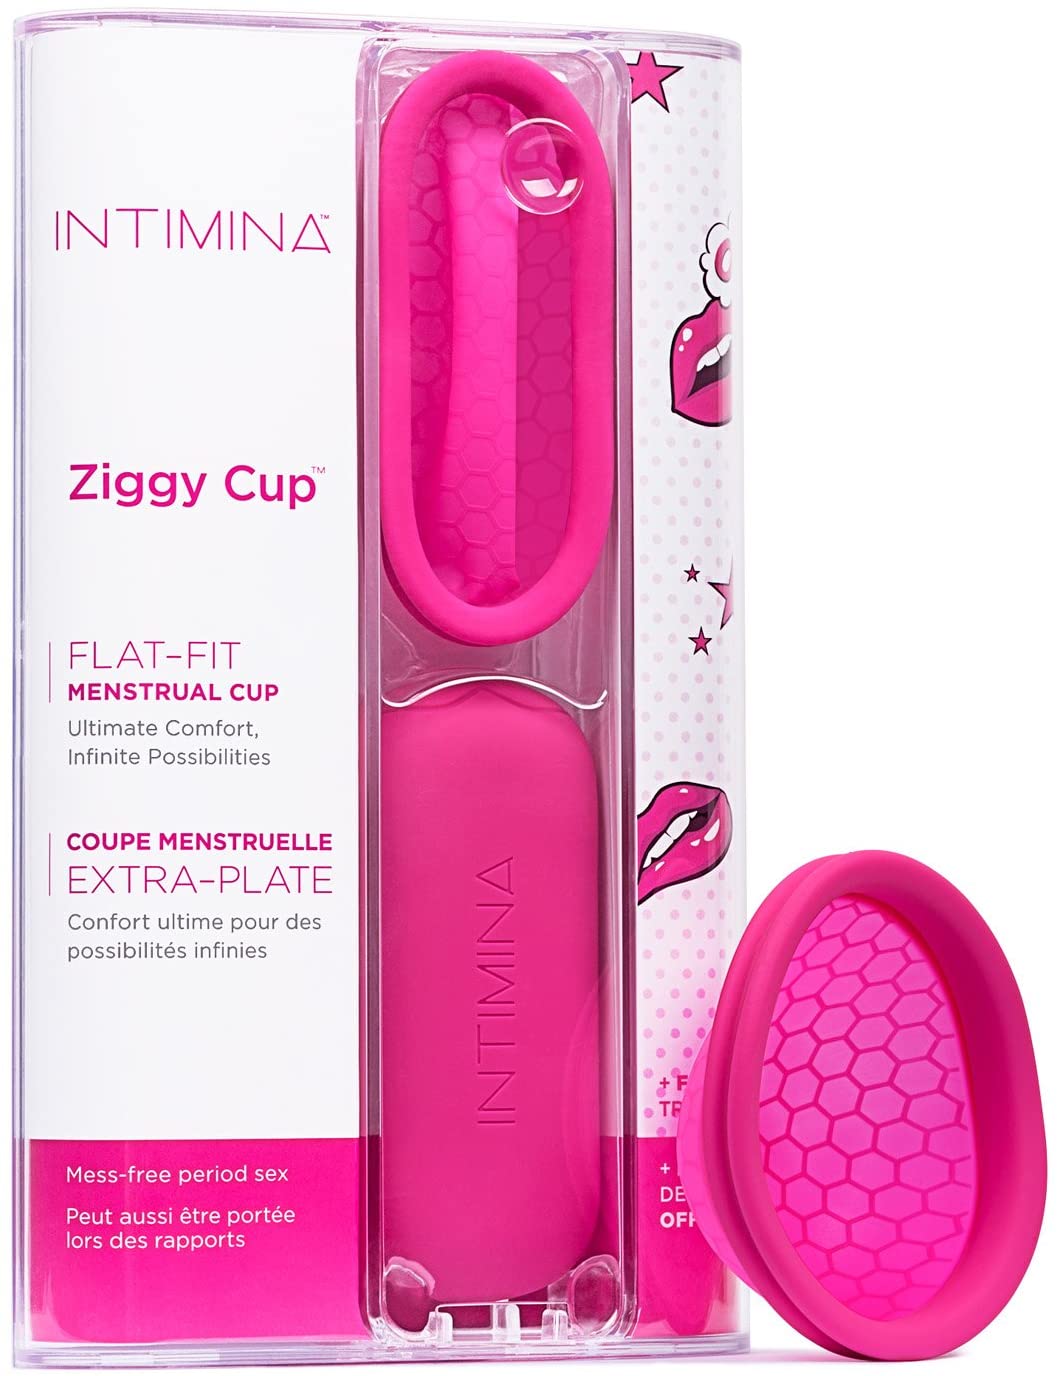 Ziggy Cup #6140 - Intimina